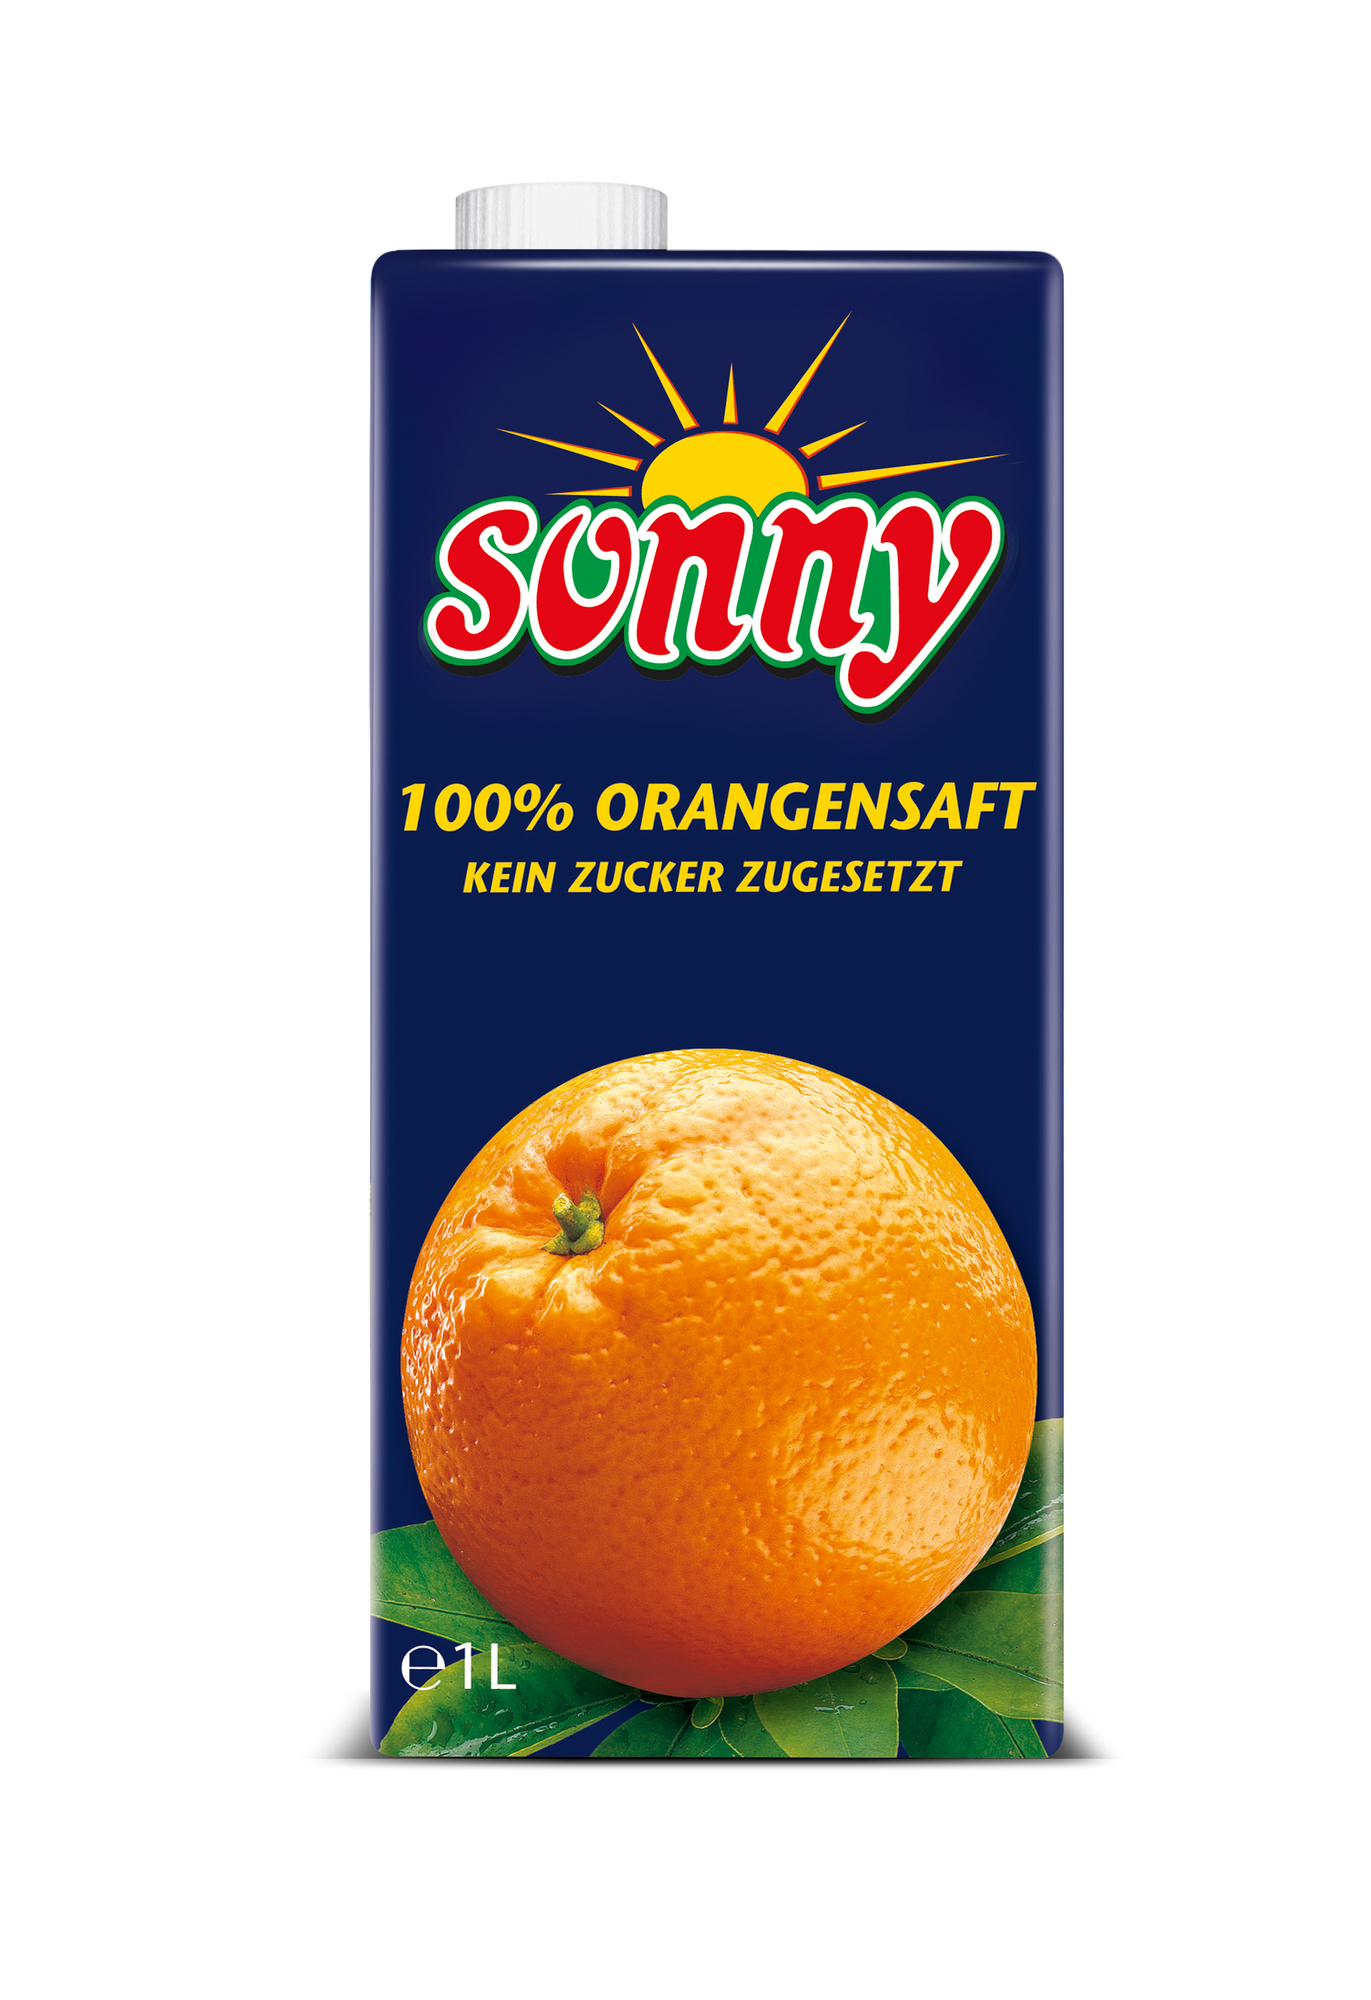 Sonny Orangensaft 100% 1000ml